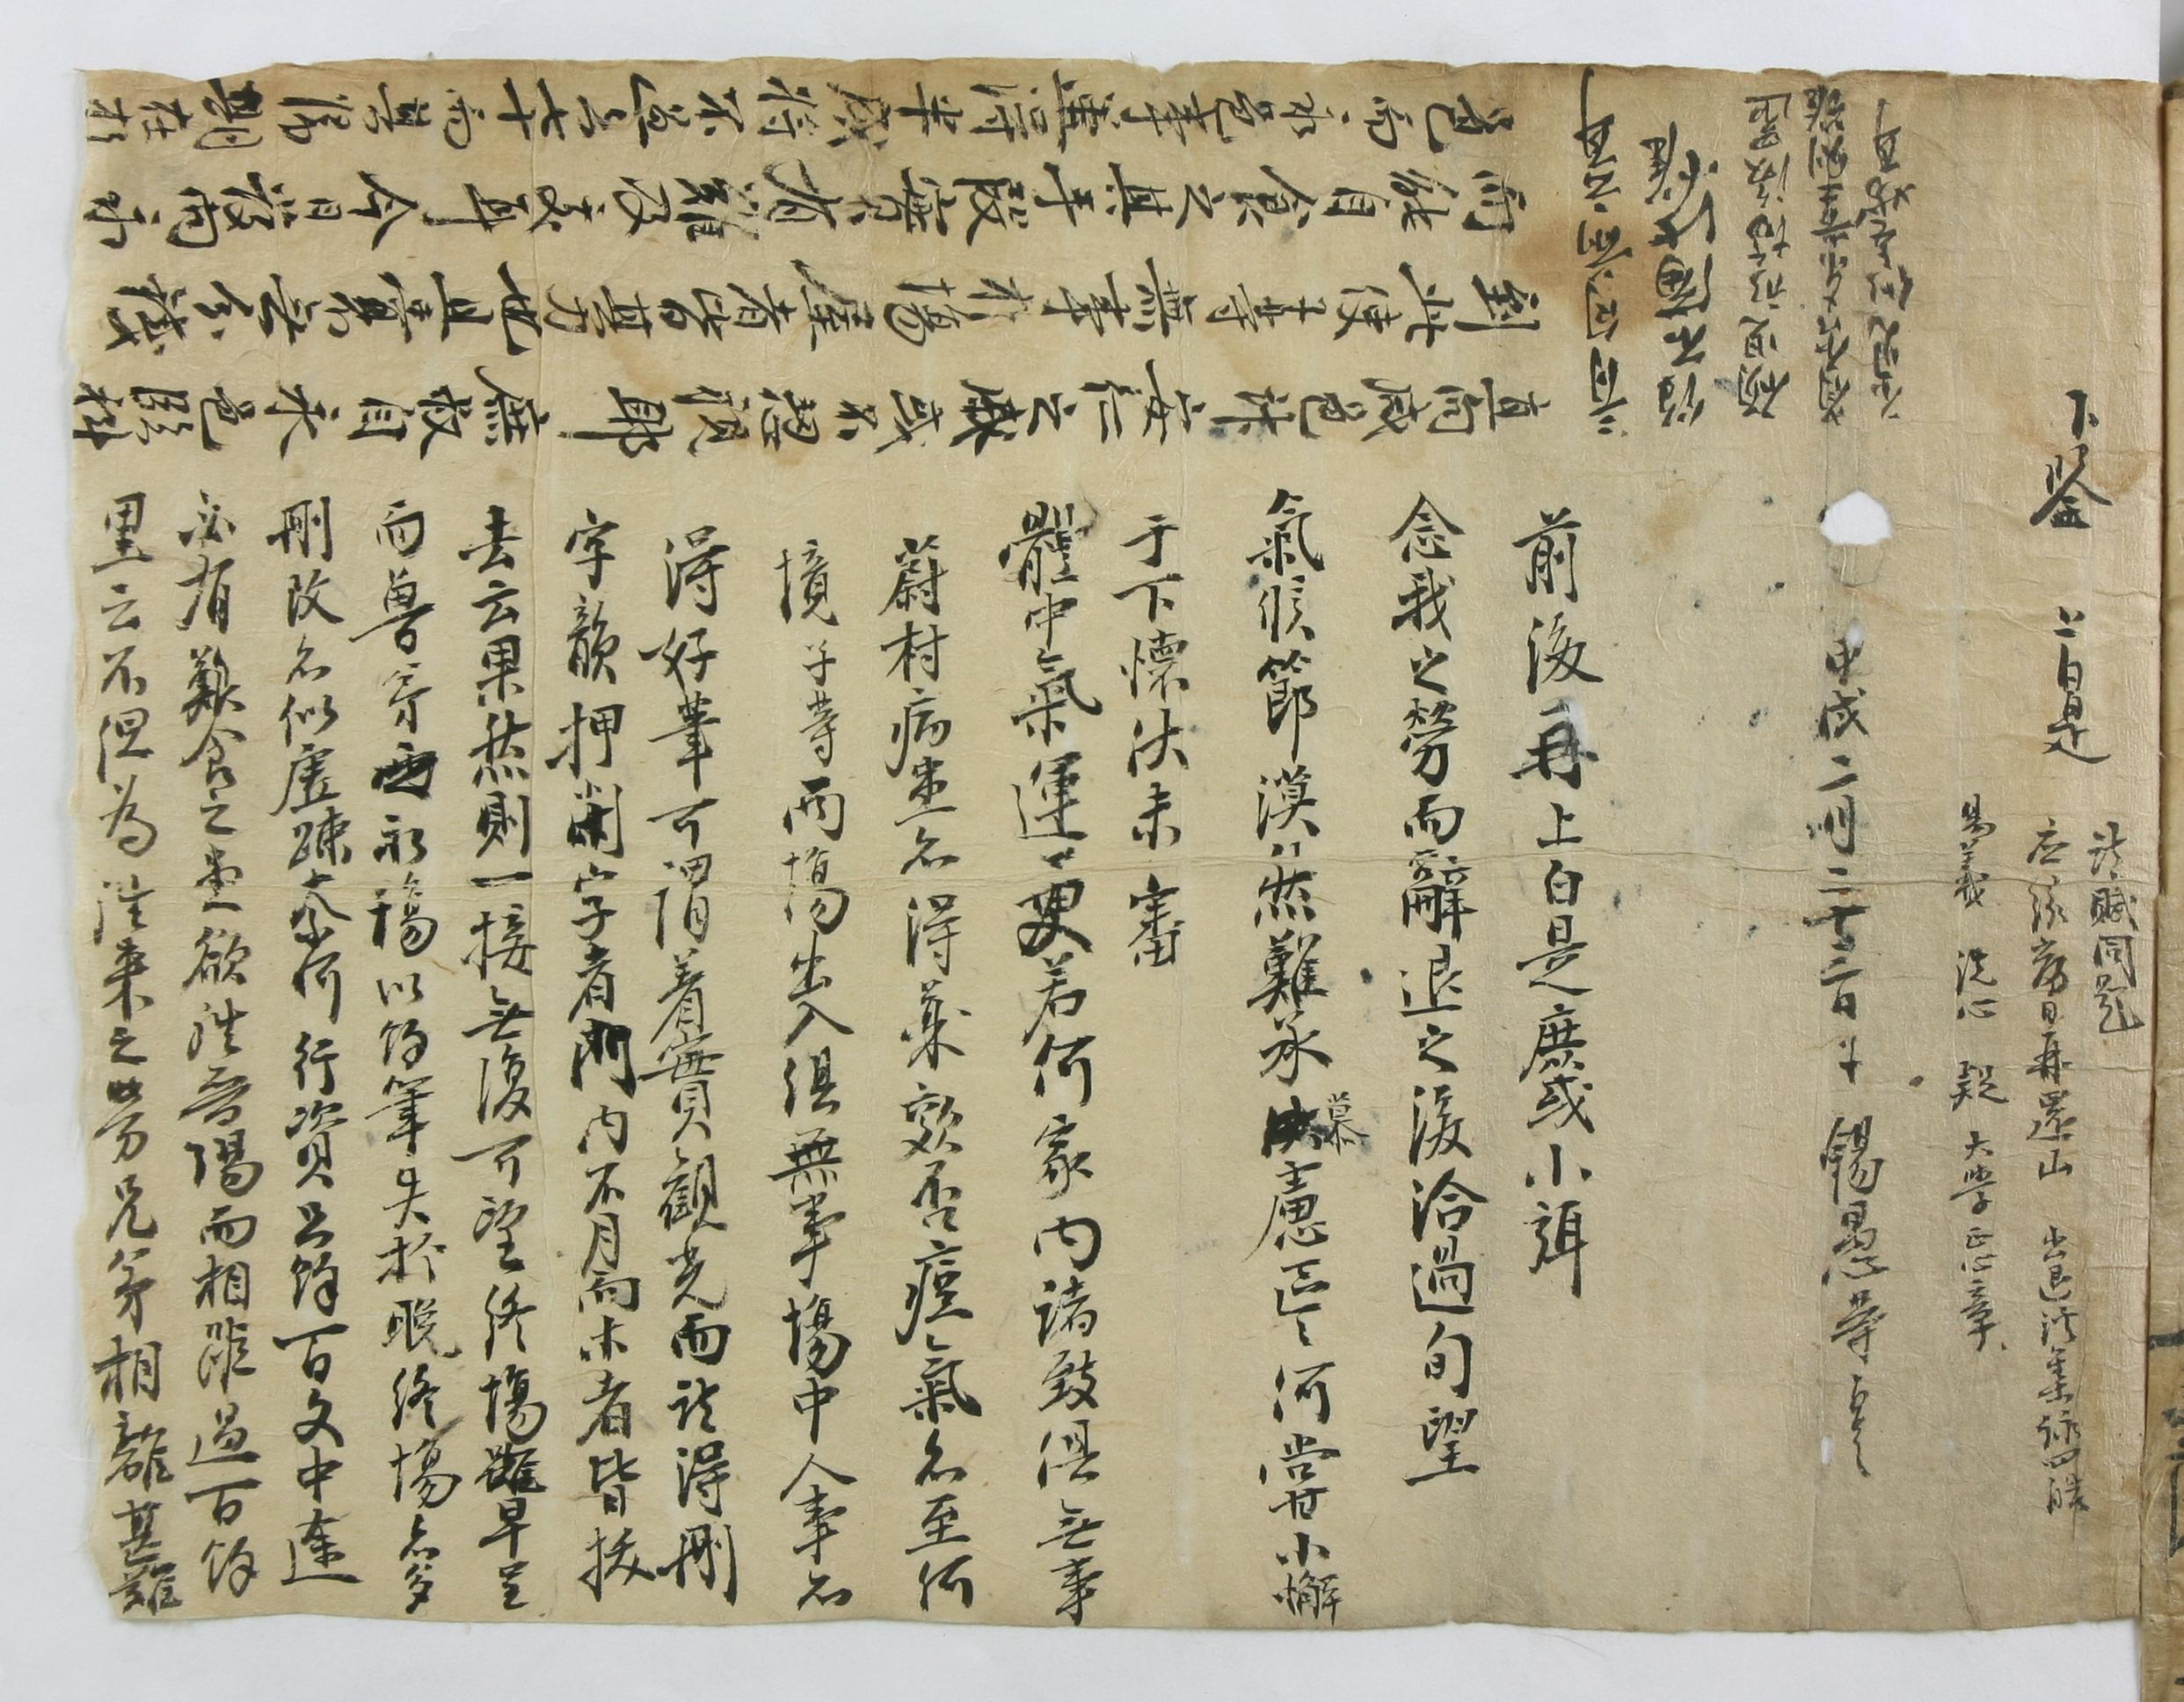 조석우(趙錫愚)가 1754년에 부모님께 보낸 편지